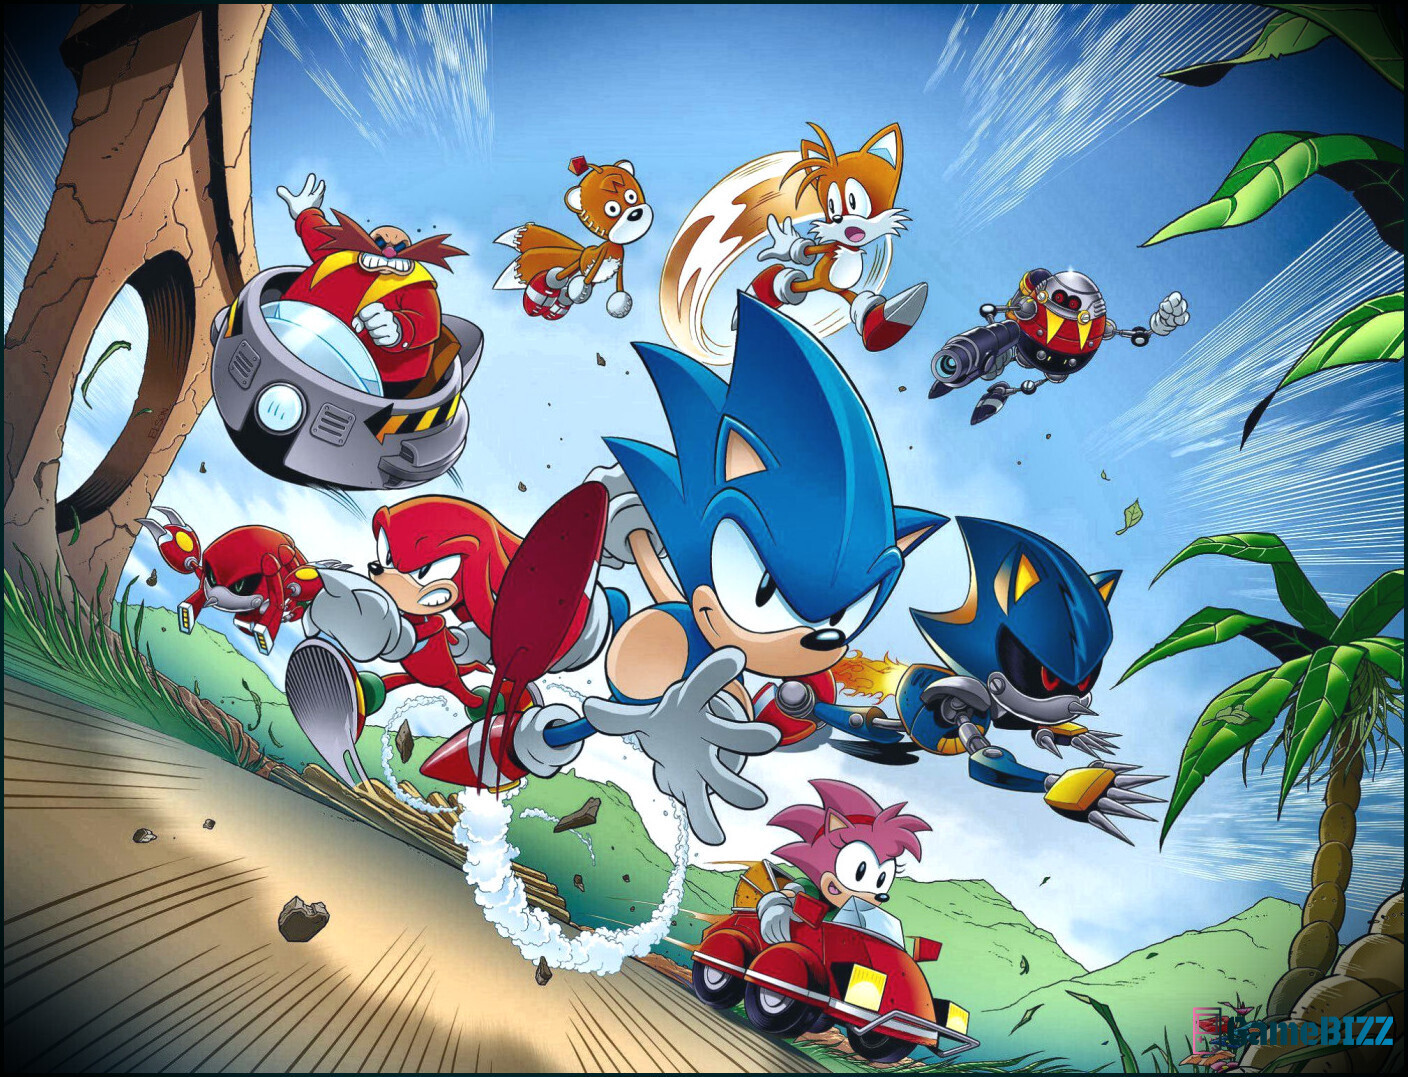 Sonic Christmas Art enthält herzzerreißenden Hinweis auf Maria